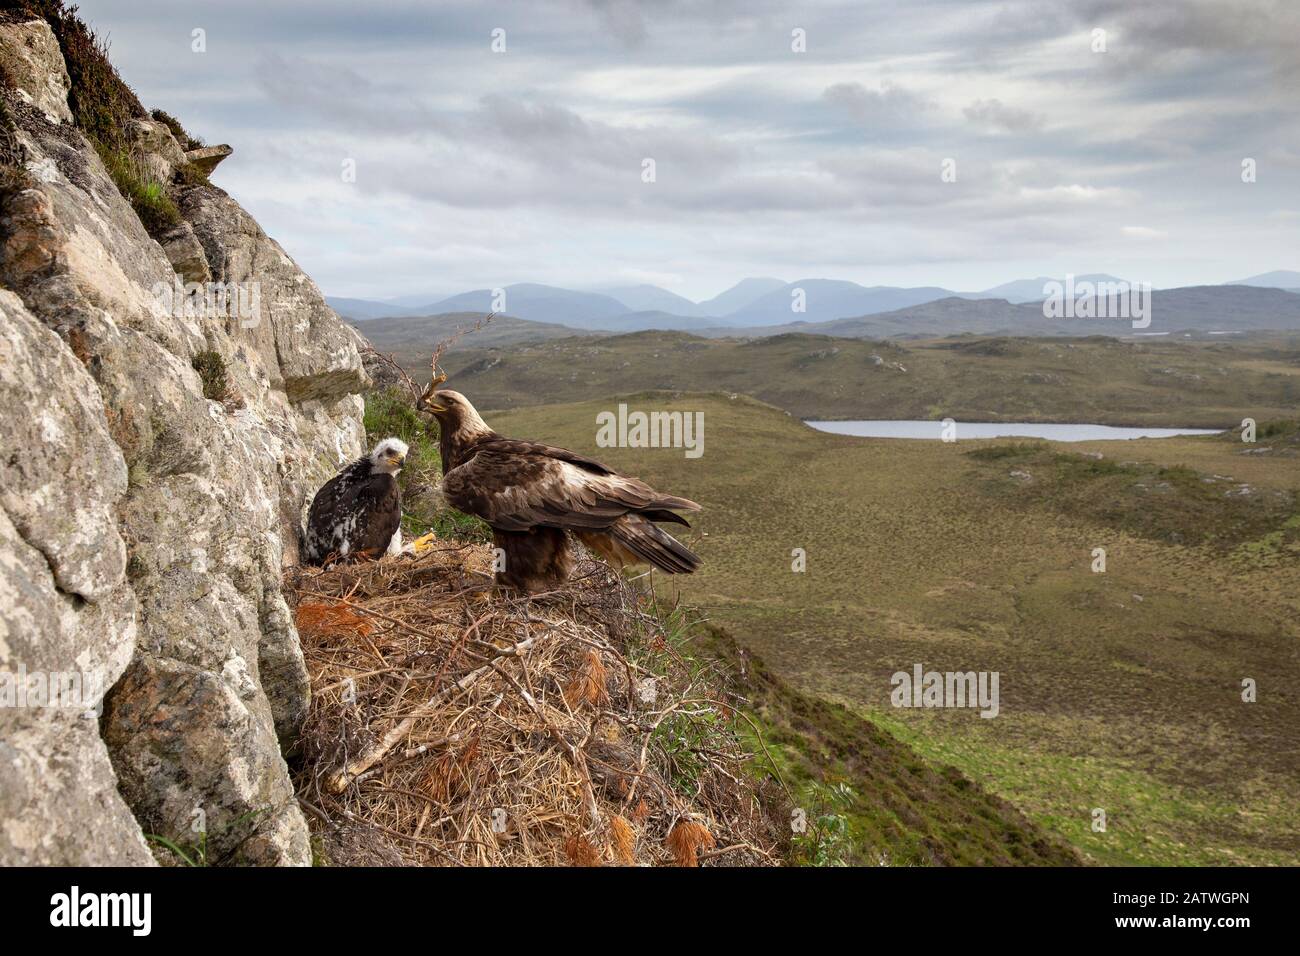 Aigle d'or (Aquila chrysaetos) adulte avec du matériel de nid sur les yeux avec poussin montrant l'arrière-plan, île de Lewis, Écosse, Royaume-Uni., mai. Banque D'Images